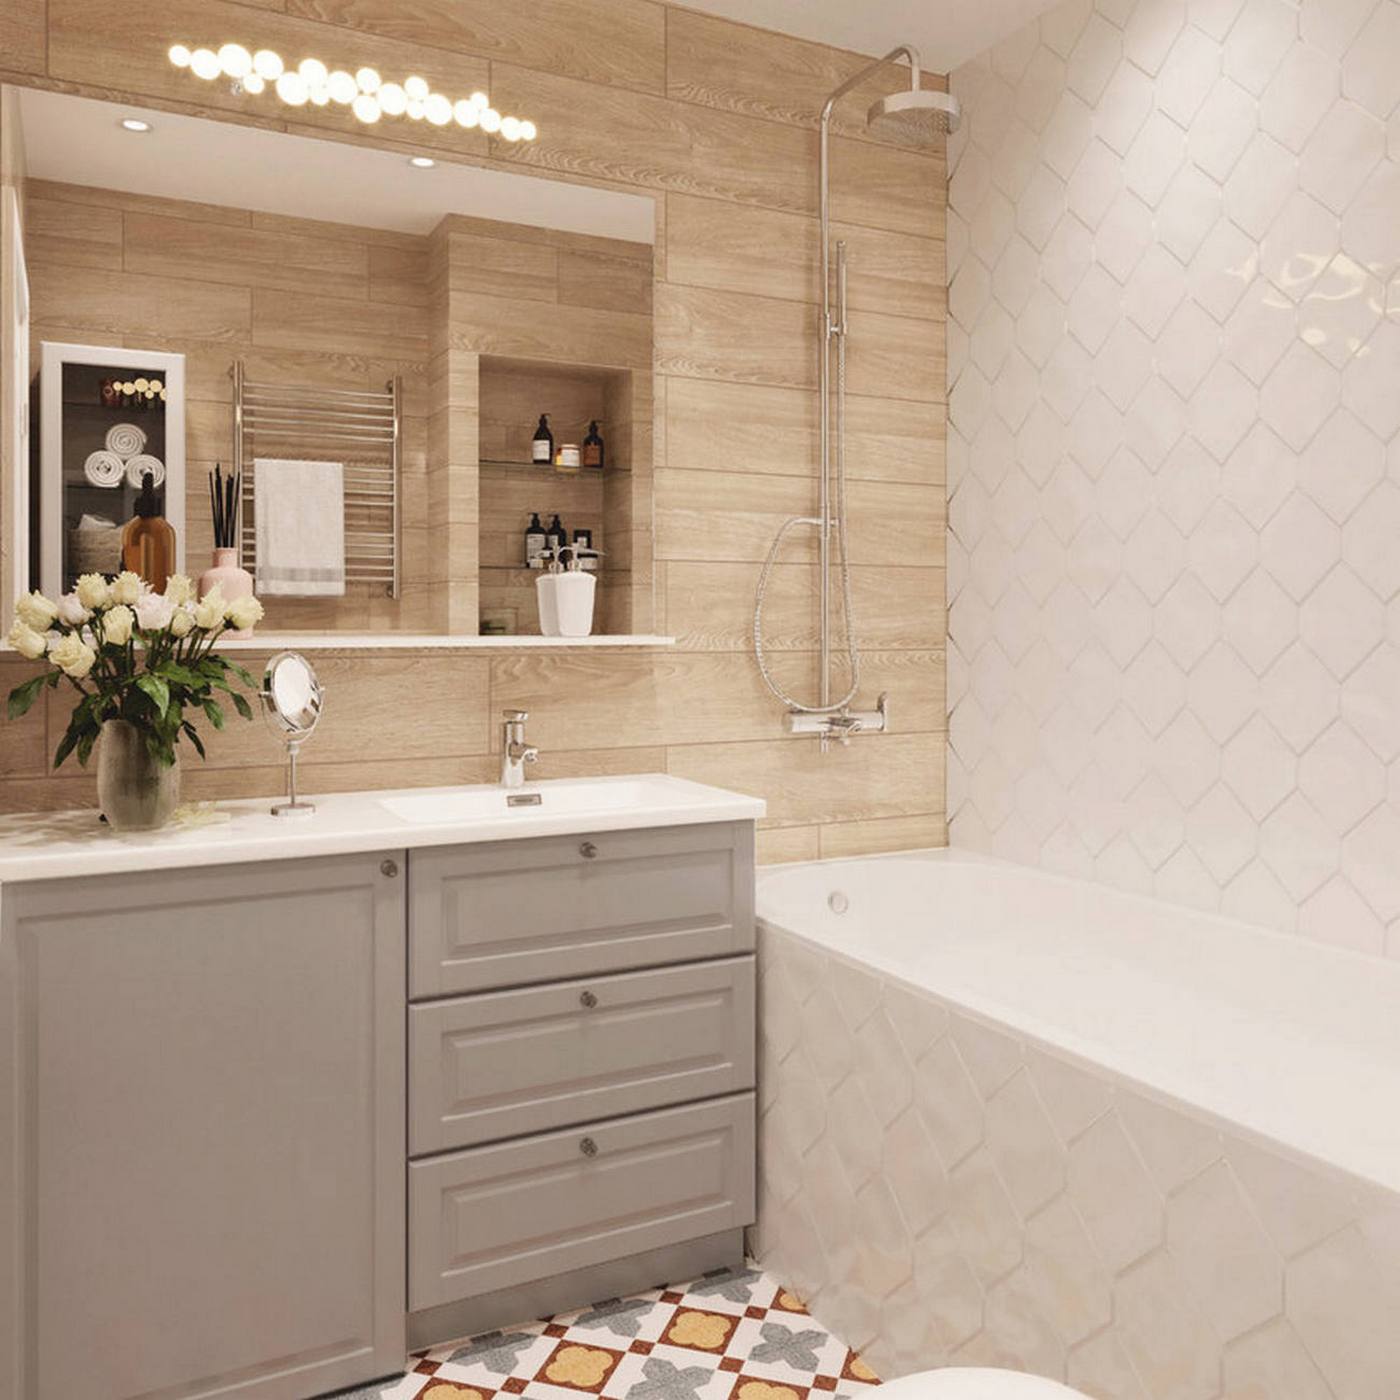 Bước vào phòng tắm, bạn sẽ cảm thấy có một sự kết nối quen thuộc đã từng thấy ở phòng bếp, đó chính là bức tường ốp gạch hình thoi màu trắng sáng bóng và sạch sẽ ngay tại khu vực bồn tắm nằm kết hợp vòi hoa sen.